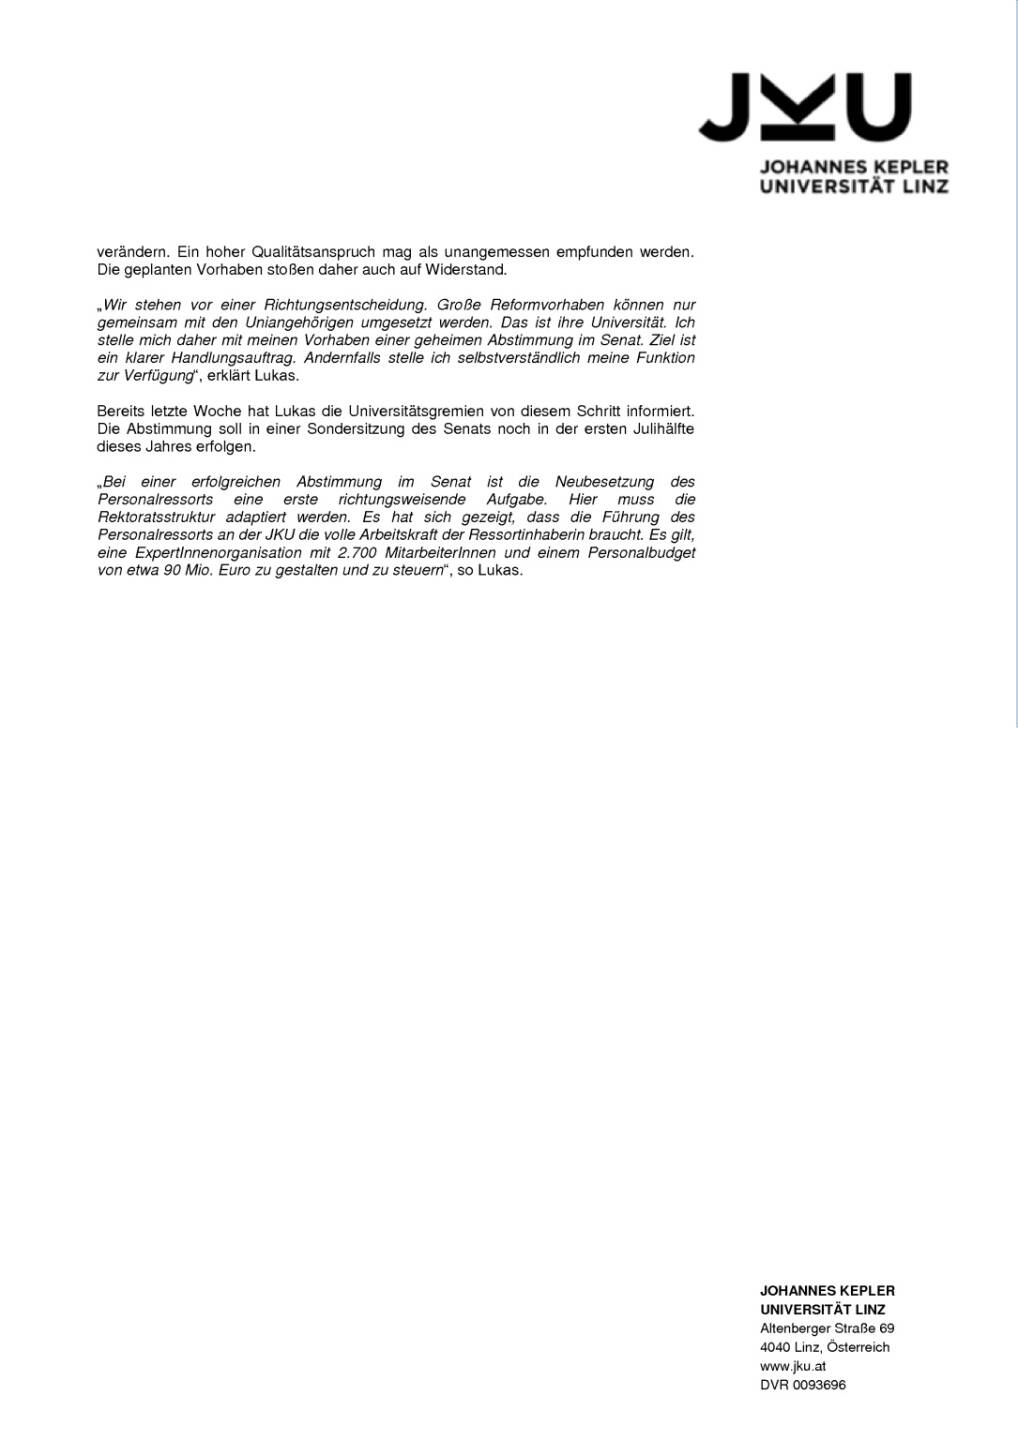 Johannes Kepler Universität Linz: Richtungsentscheidung, Seite 2/2, komplettes Dokument unter http://boerse-social.com/static/uploads/file_1236_johannes_kepler_universitat_linz_richtungsentscheidung.pdf